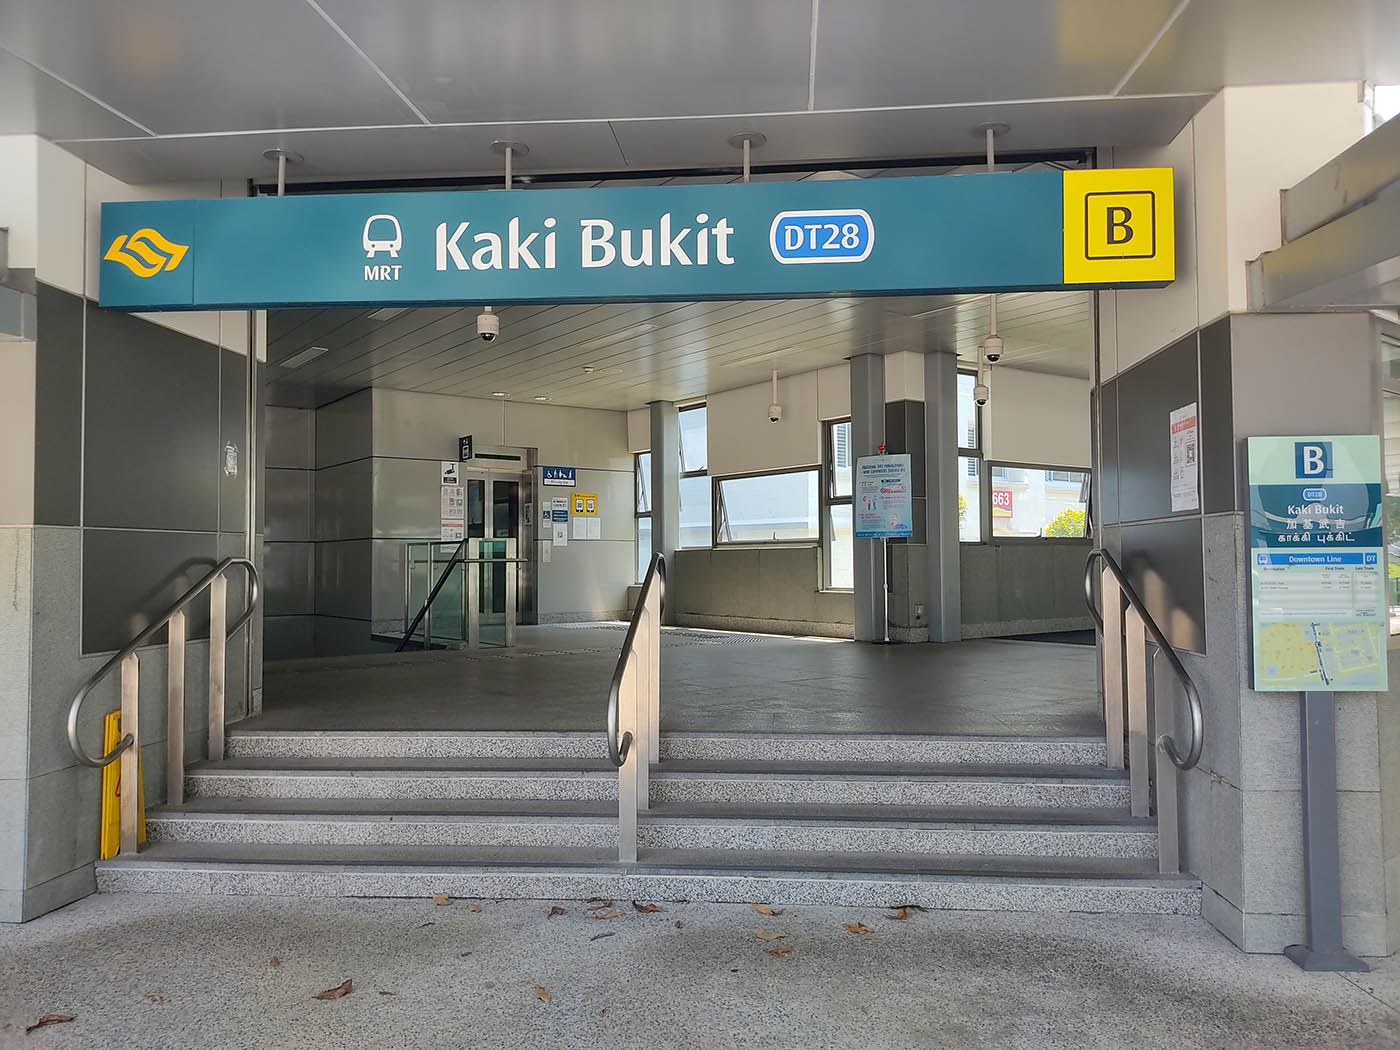 Kaki Bukit MRT Station - - Exit B